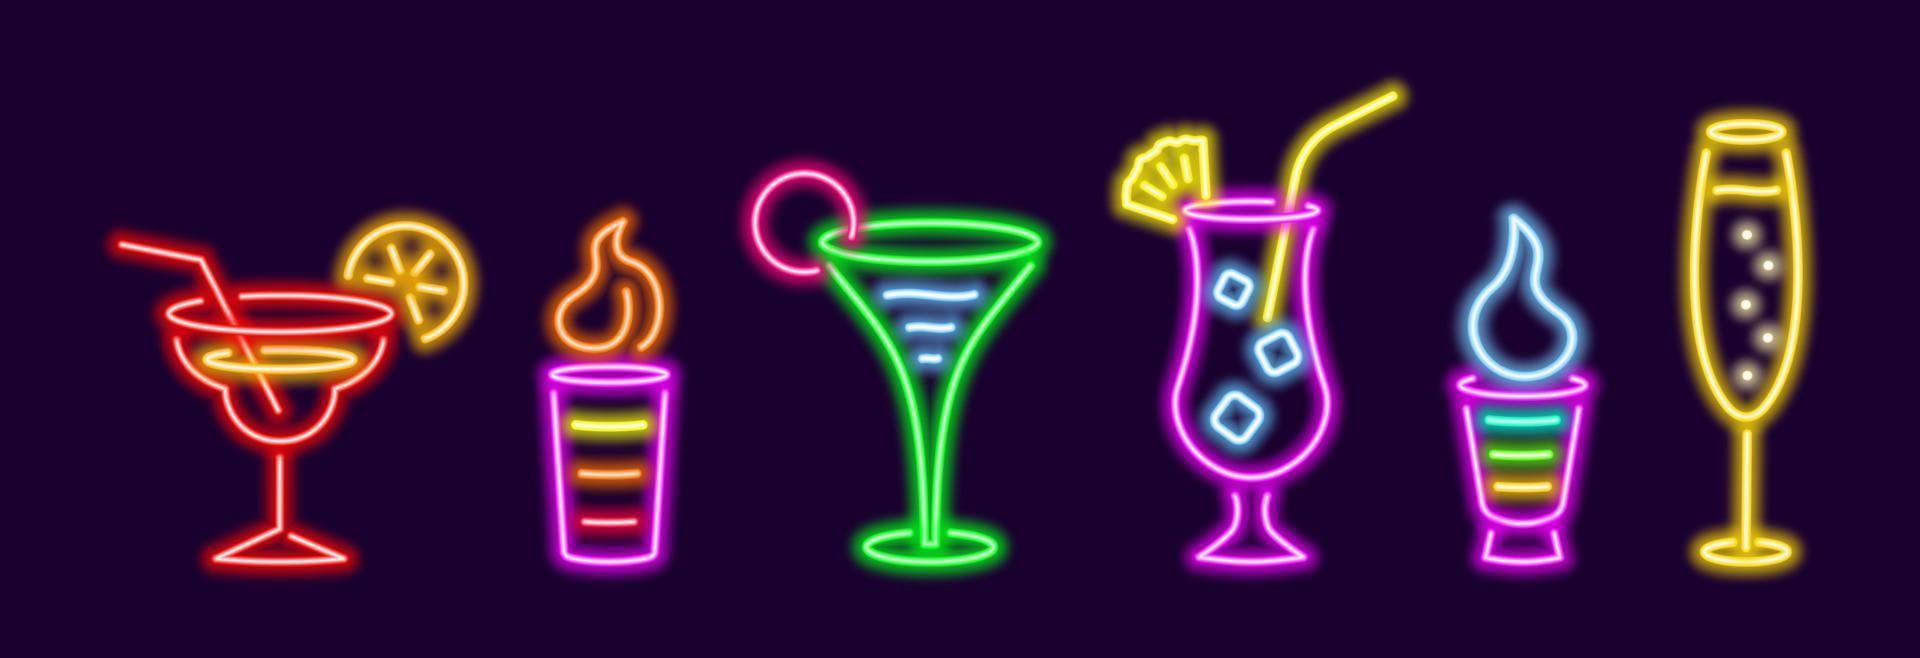 ensemble de cocktails populaires colorés au néon. b52 brillant avec de la crème irlandaise avec de la mousse figurée dans une tasse en verre. champagne d'élite avec des bulles en verre. pina colada lumineuse avec coin de vecteur d'ananas